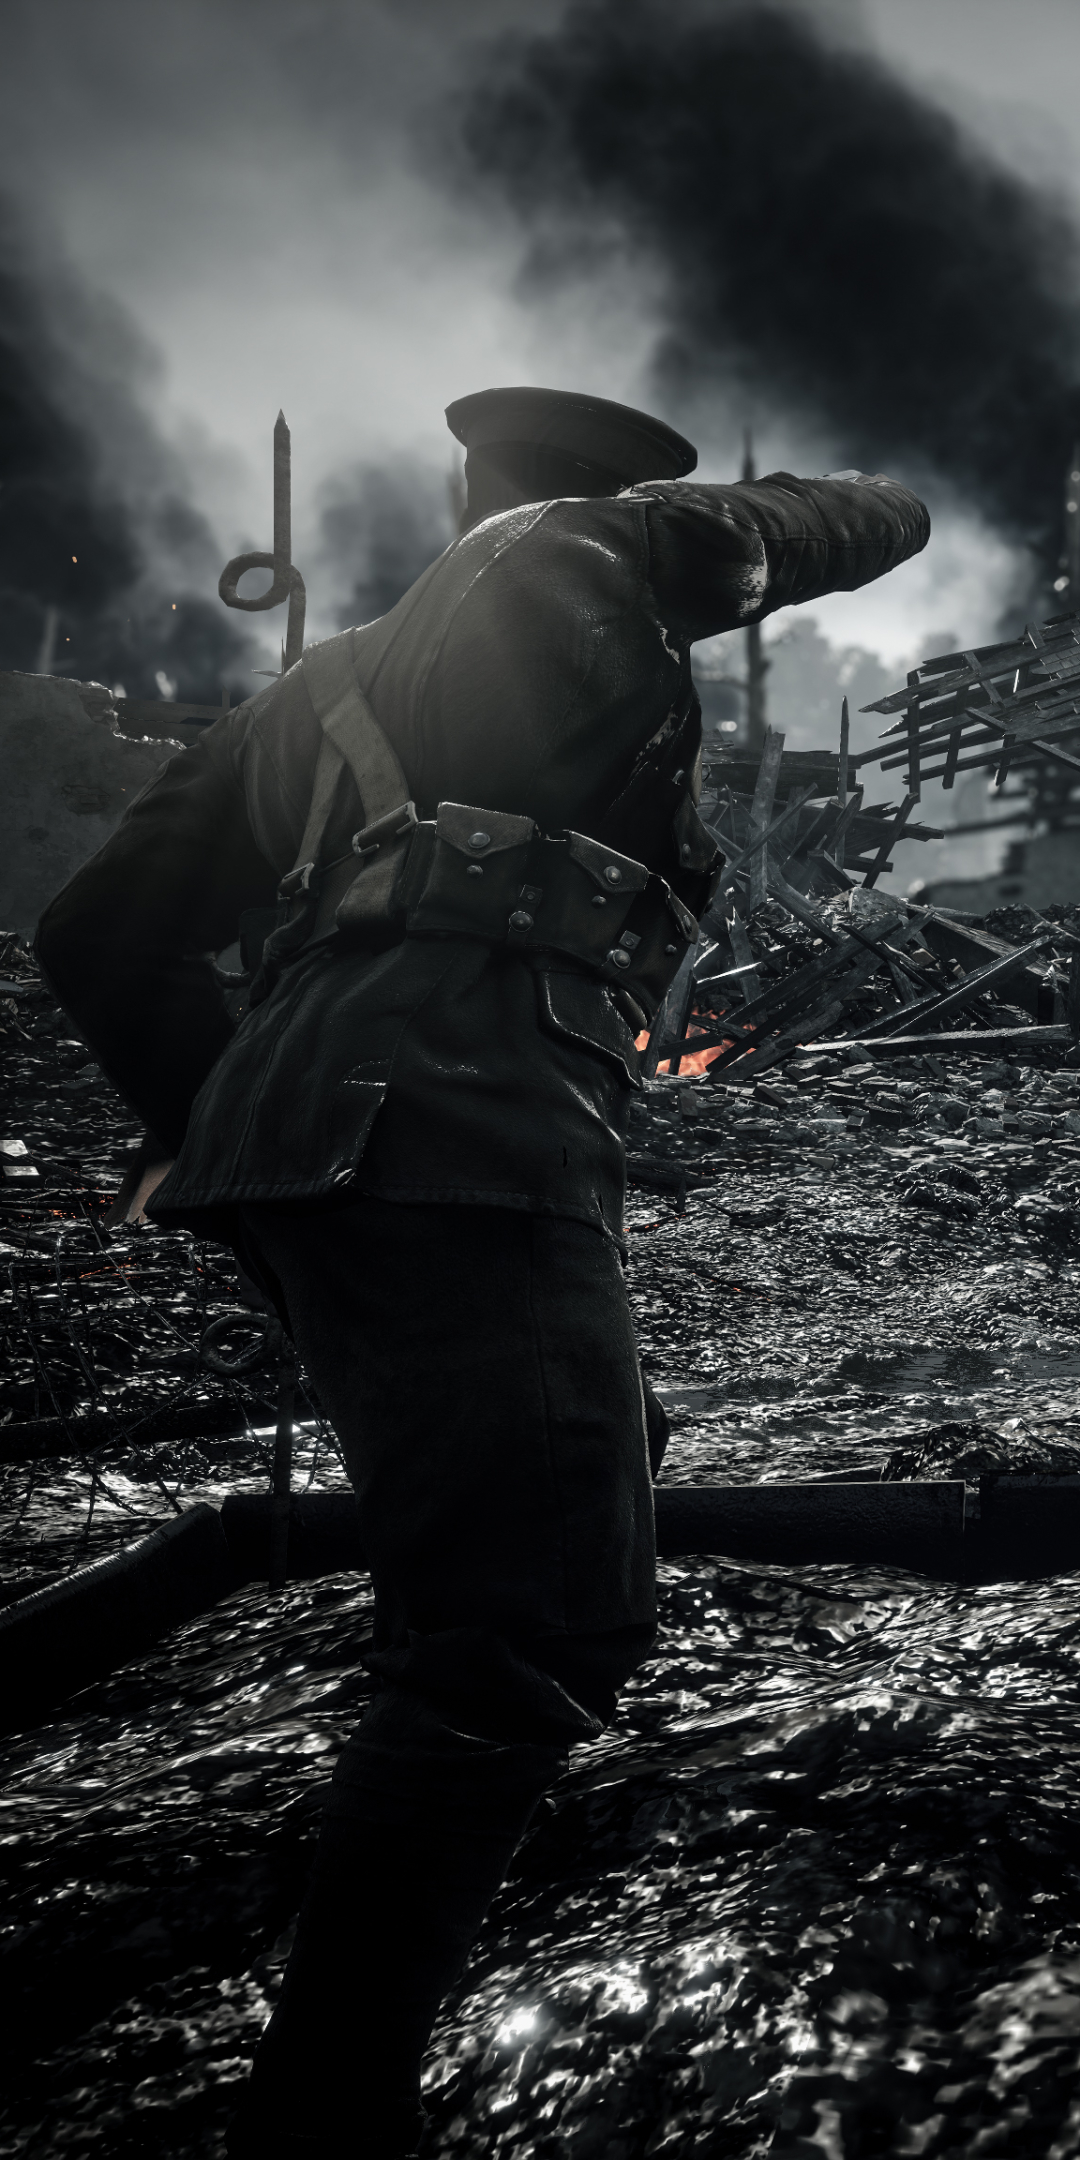 Descarga gratuita de fondo de pantalla para móvil de Campo De Batalla, Soldado, Videojuego, Battlefield 1.